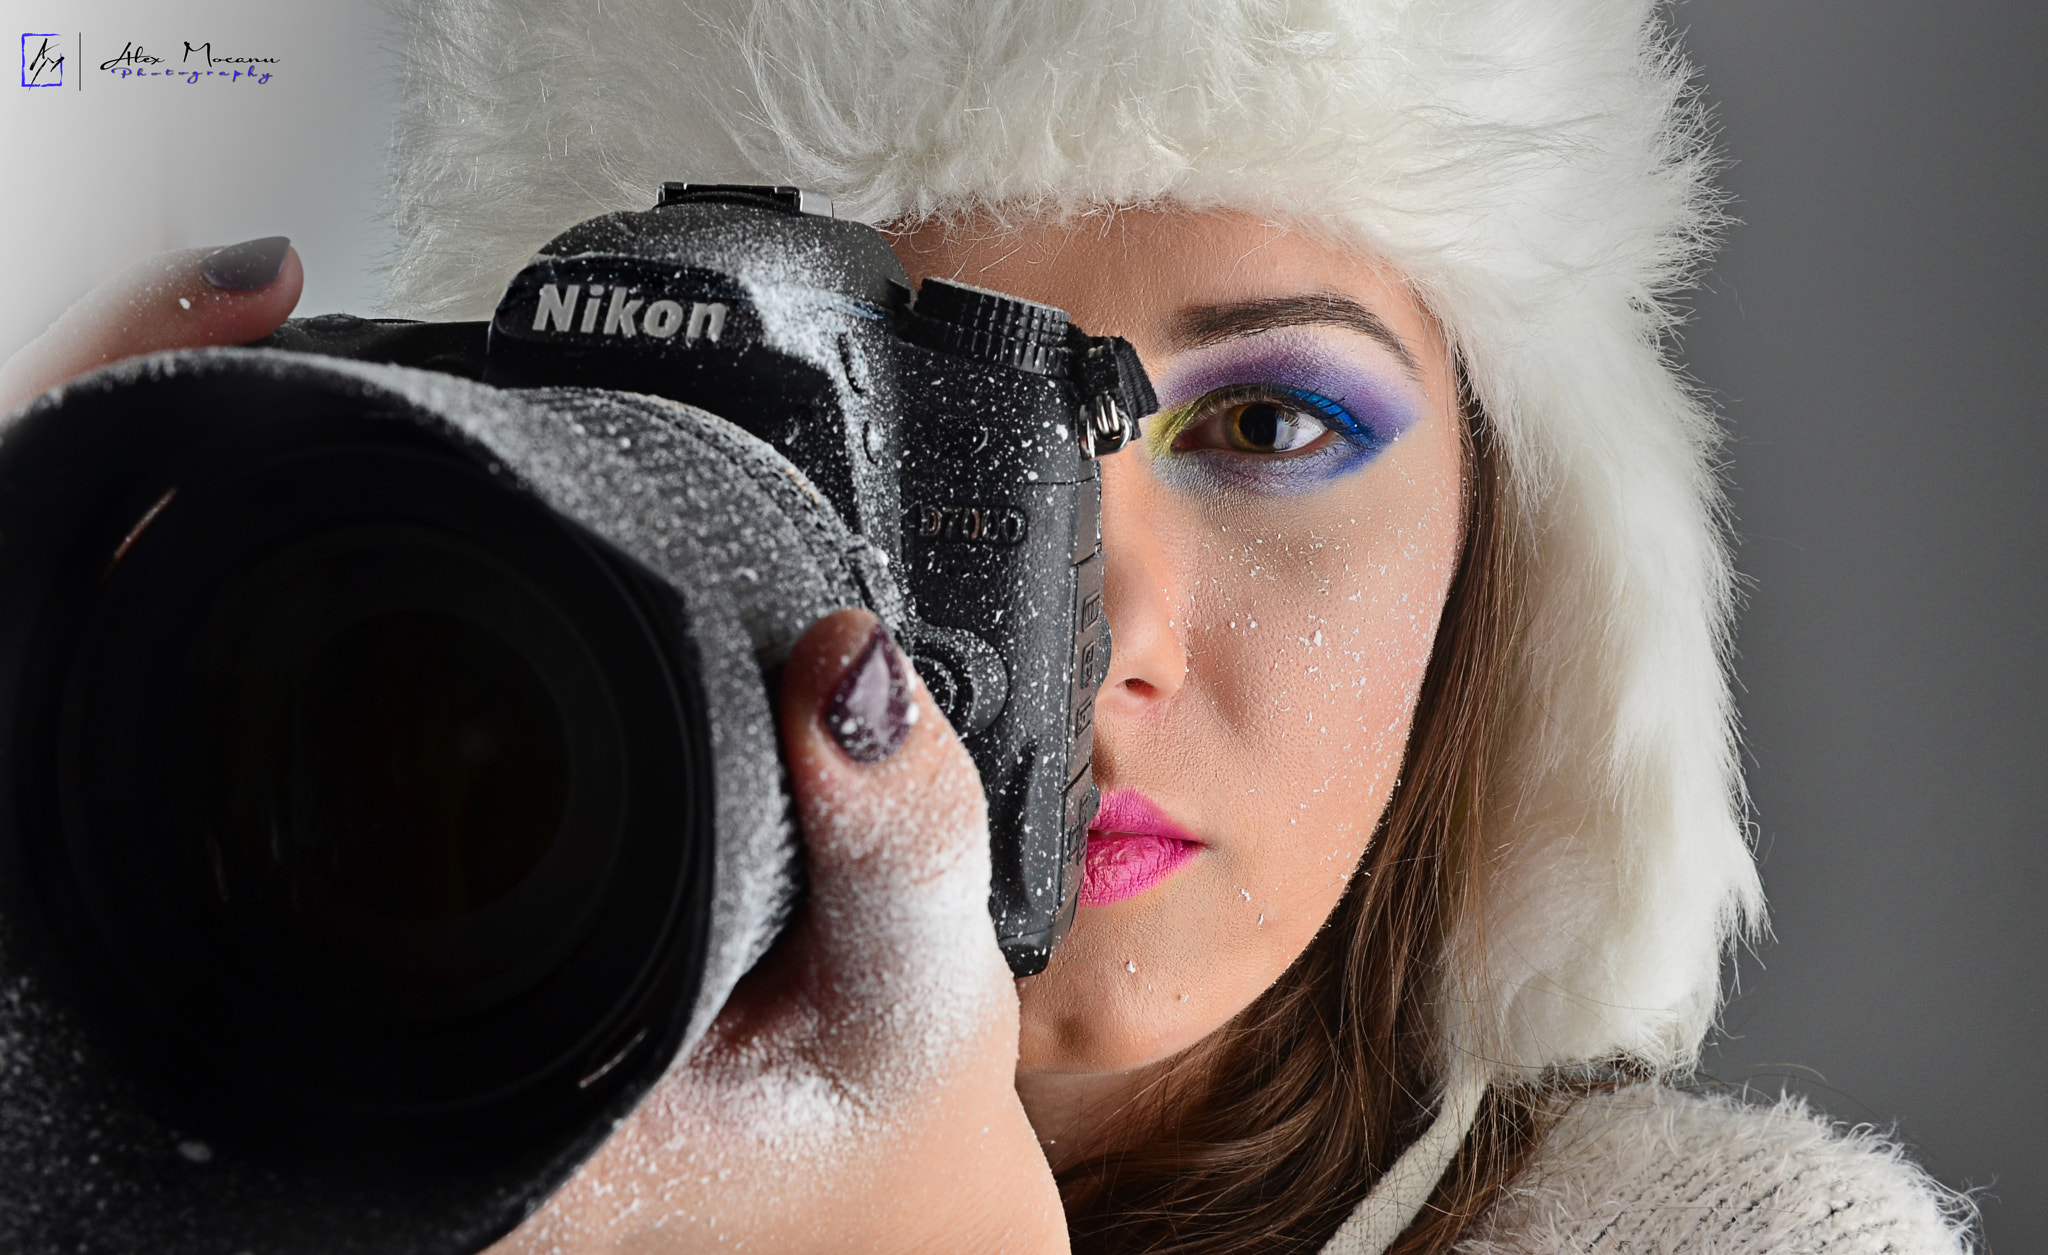 Nikon D5100 + Nikon AF-S Nikkor 24-70mm F2.8G ED sample photo. Freeze shot photography